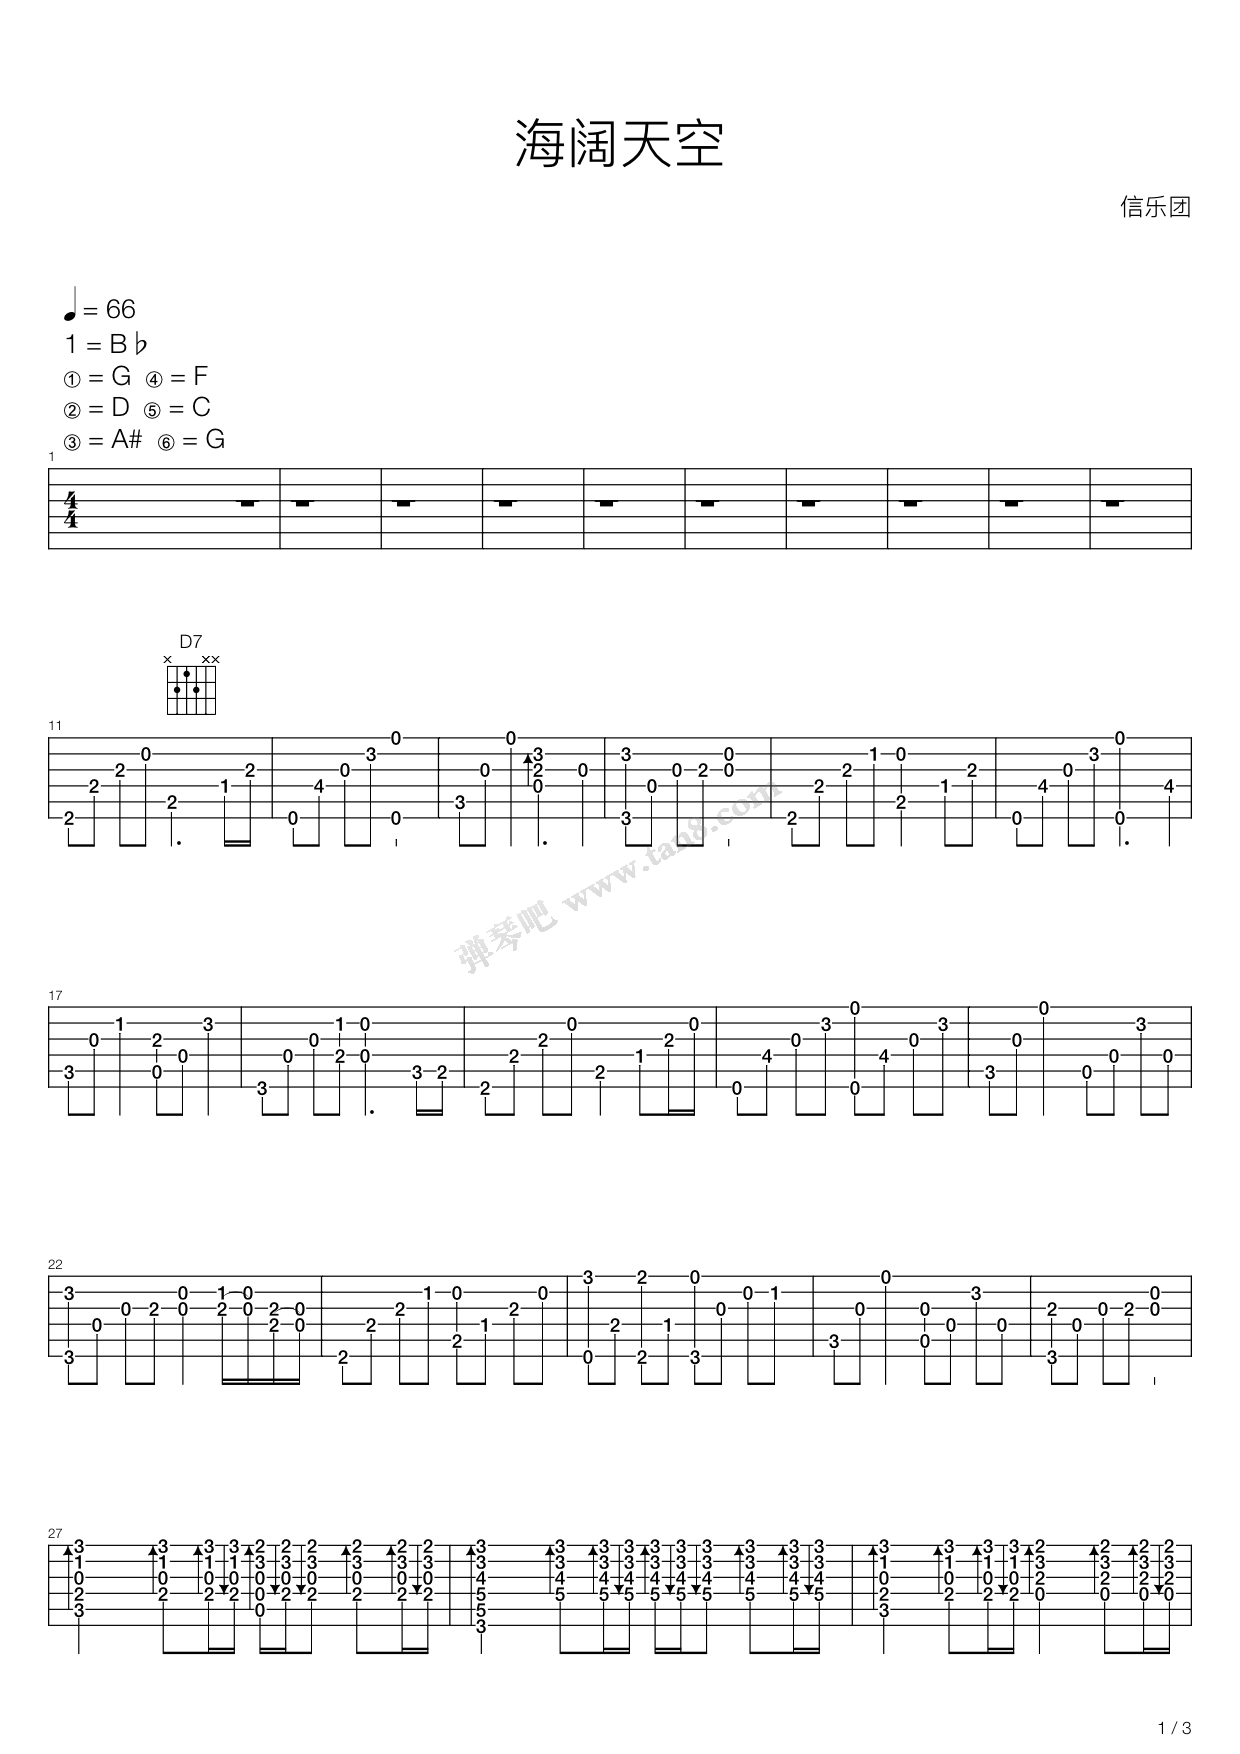 海阔天空-信乐团五线谱预览3-钢琴谱文件（五线谱、双手简谱、数字谱、Midi、PDF）免费下载